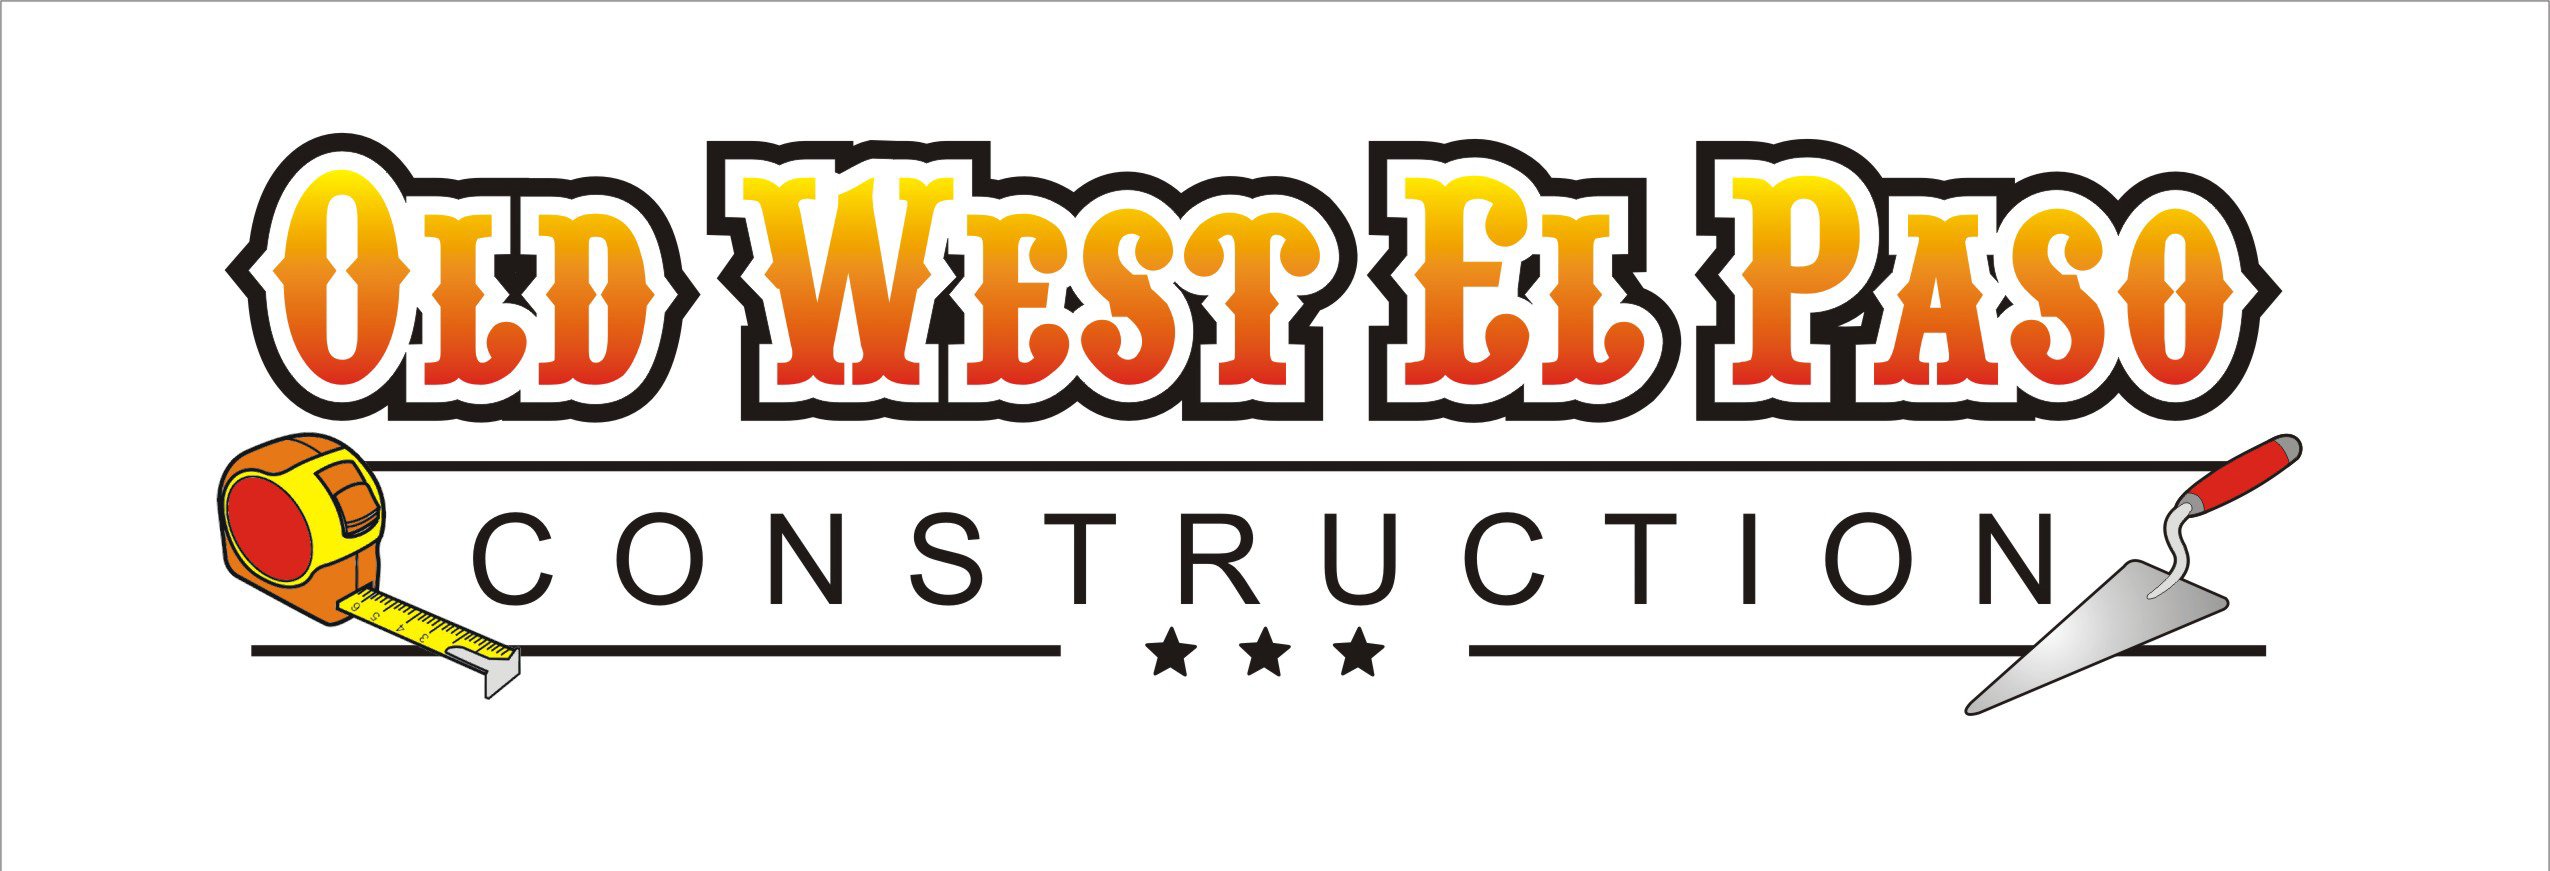 Old West El Paso Construction Logo